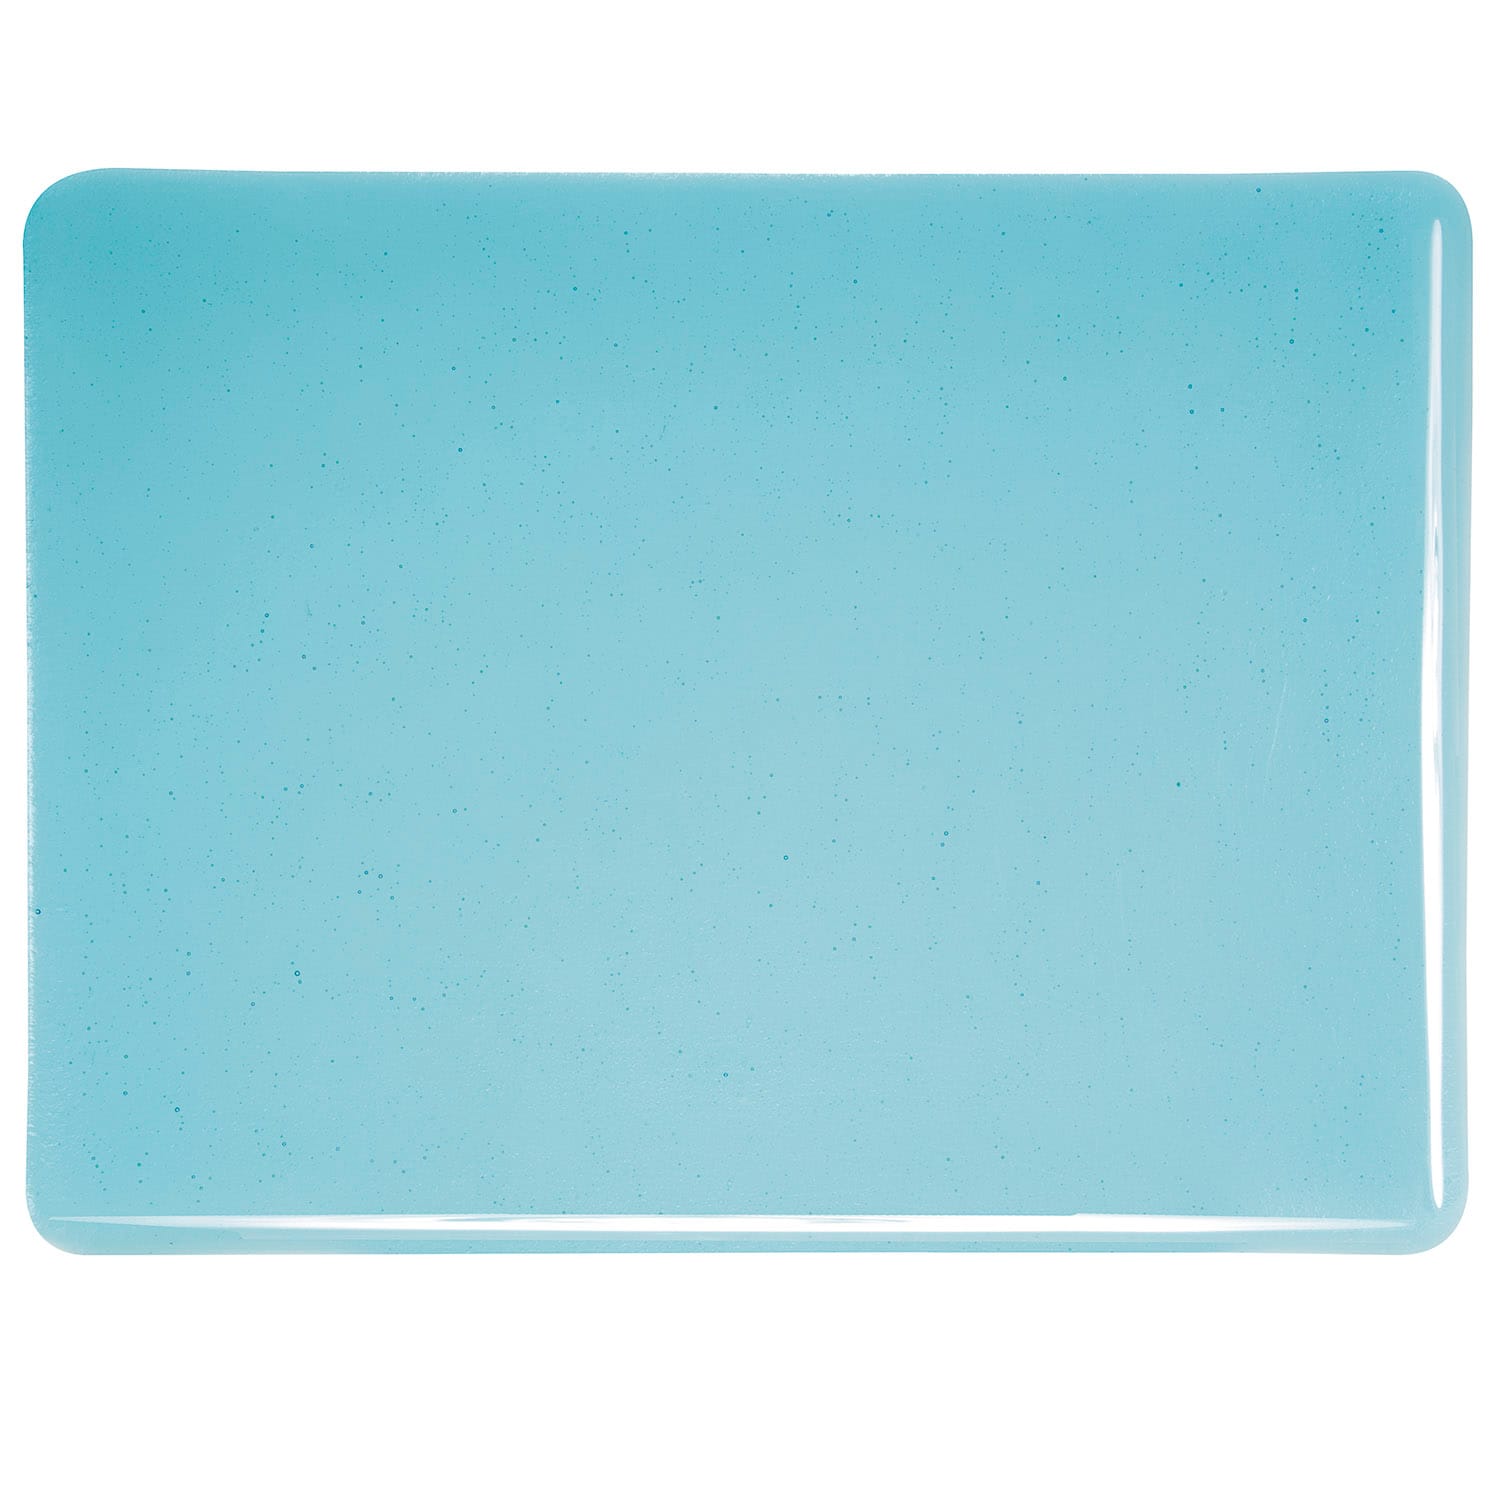 Bullseye COE90 Fusing Glass 001416 Light Turquoise Blue Half Sheet